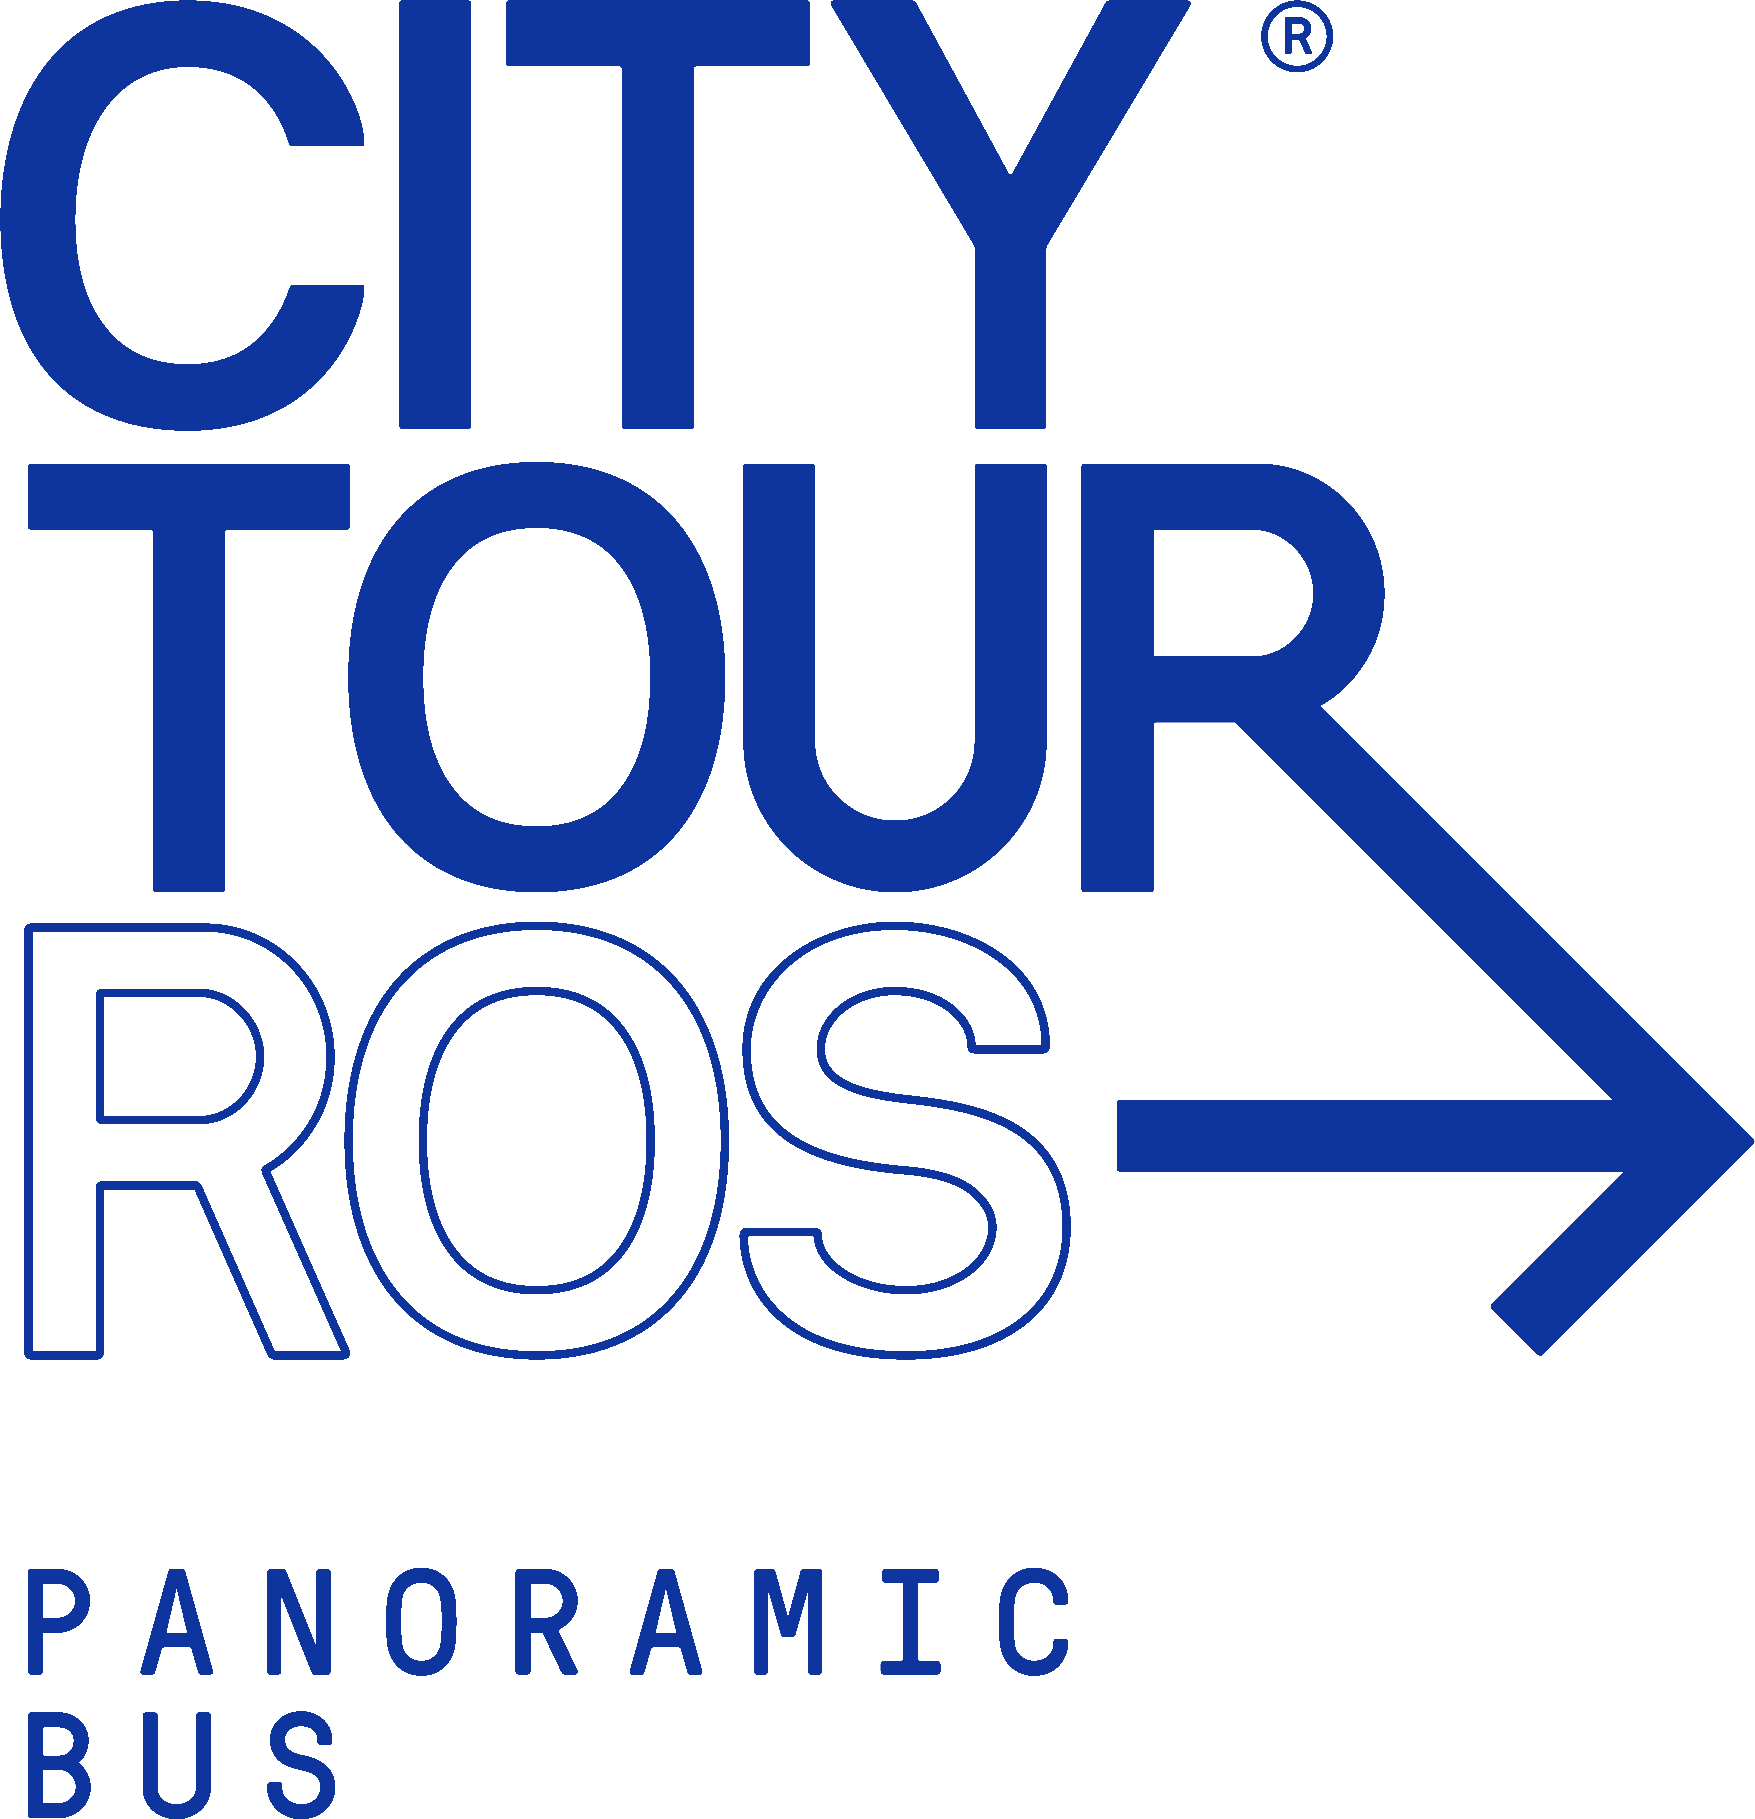 colectivo city tour rosario